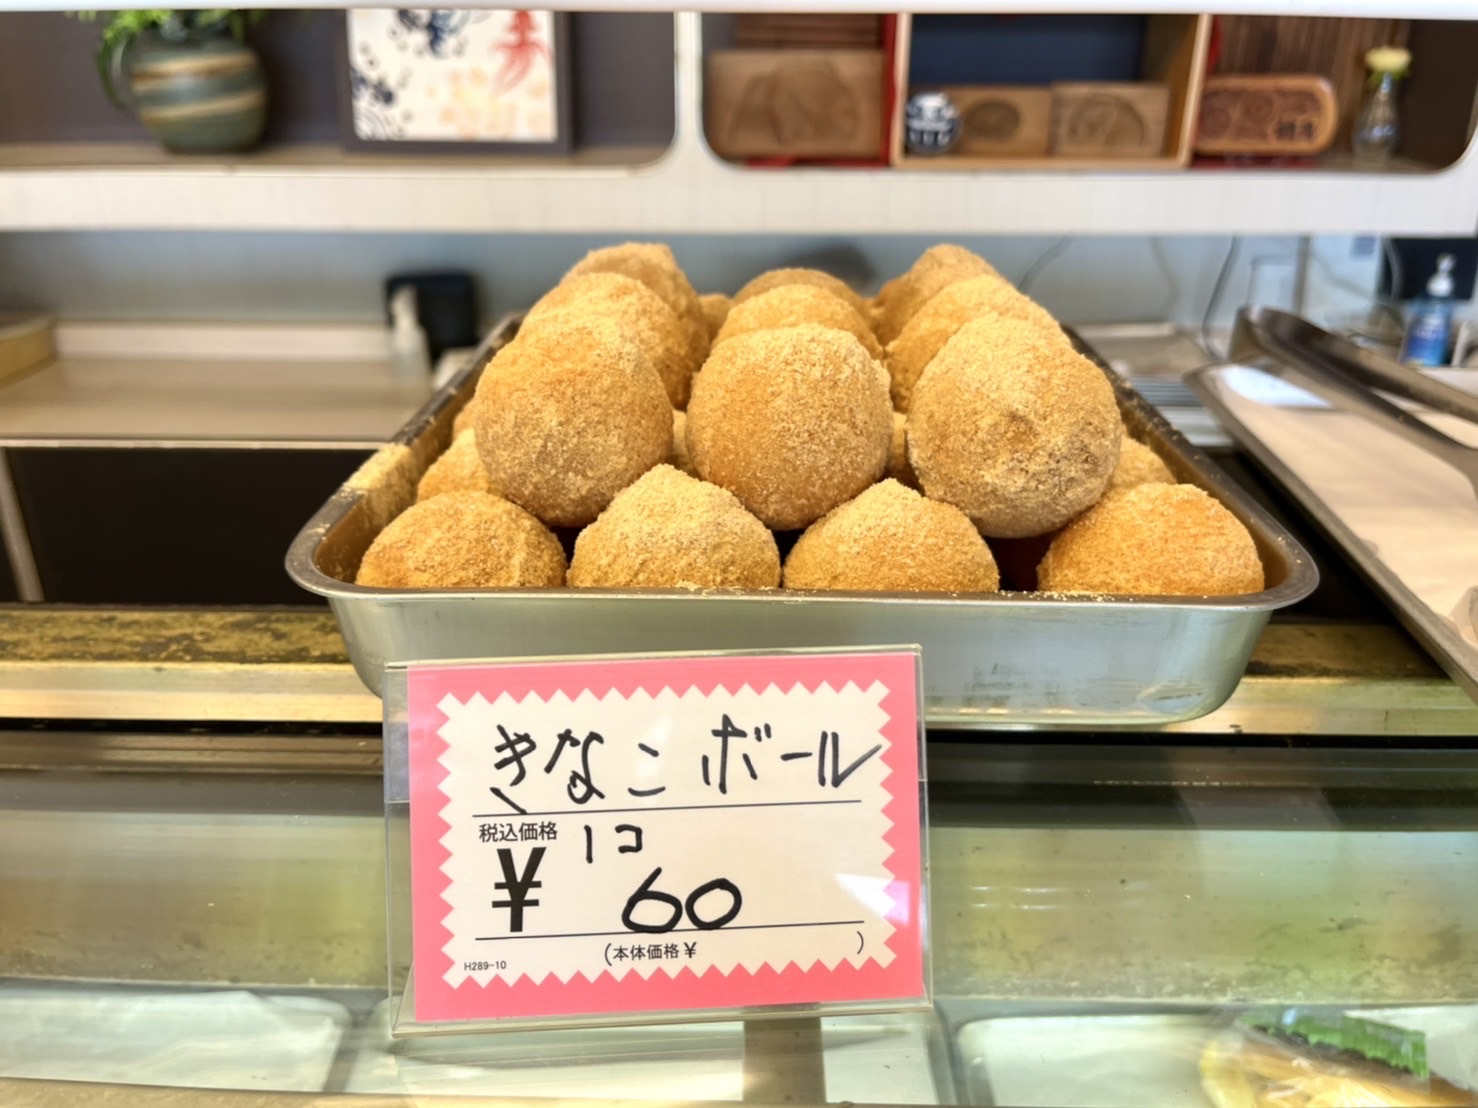 ぬまつーグルメ パンの梢月 70年愛される昔ながらのパン屋さん きなこボールは唯一無二 沼津市高島本町 静岡新聞アットエス